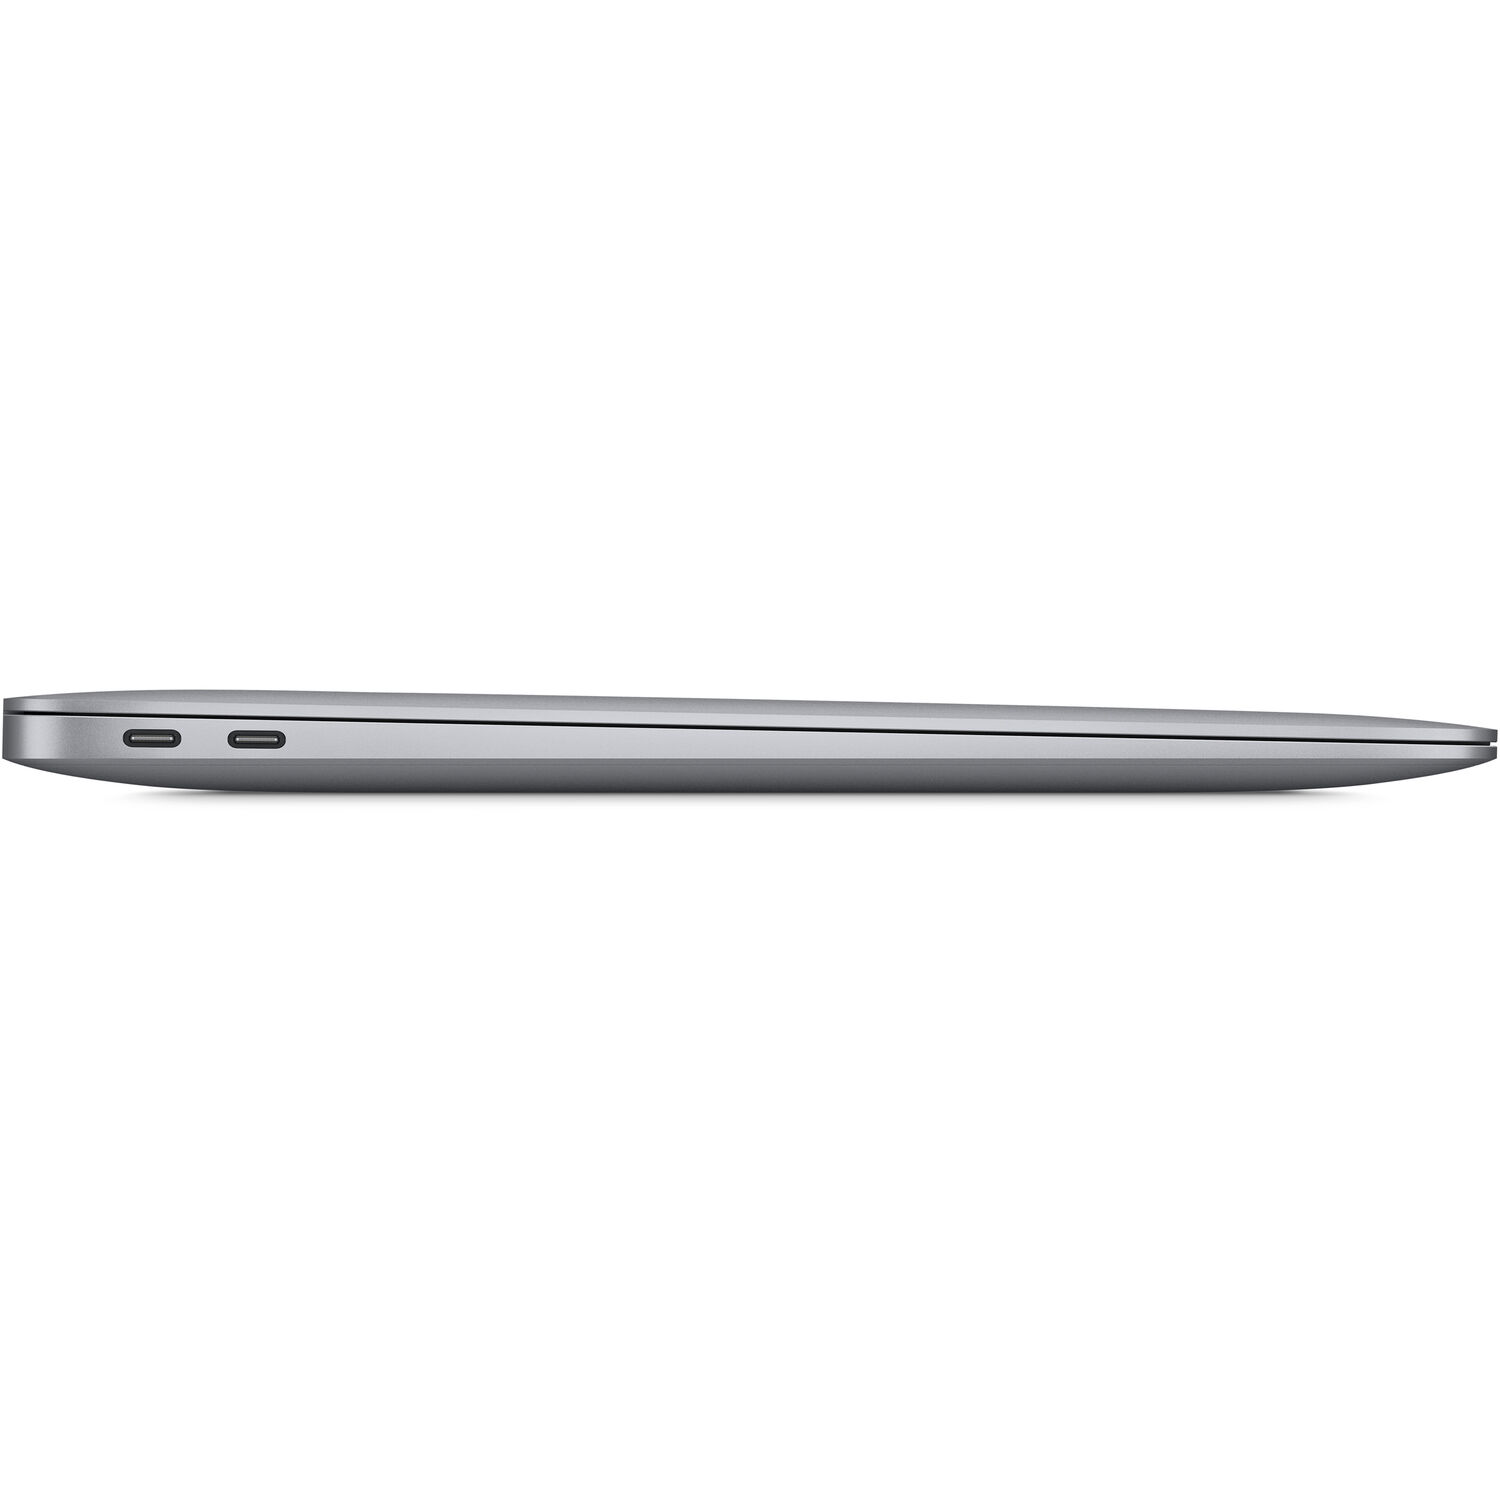 MGND3 - MacBook Air 2020 13 Inch - Apple M1 8-Core / 8GB / 256GB - Gold (Chính hãng SA/A)